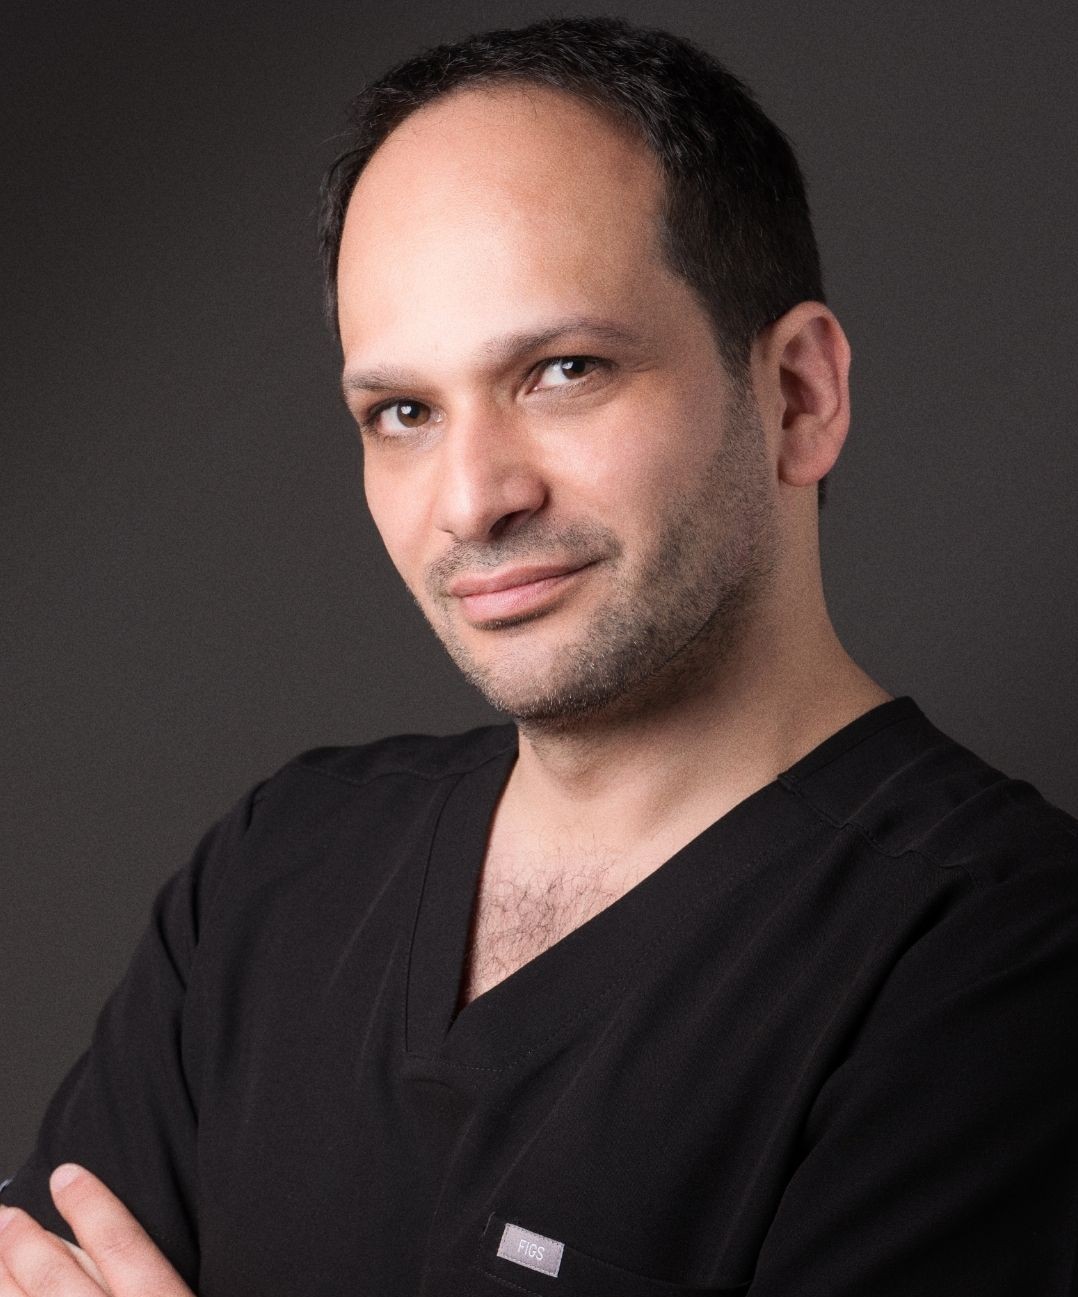 Facelift: Dr. Luca Piombino